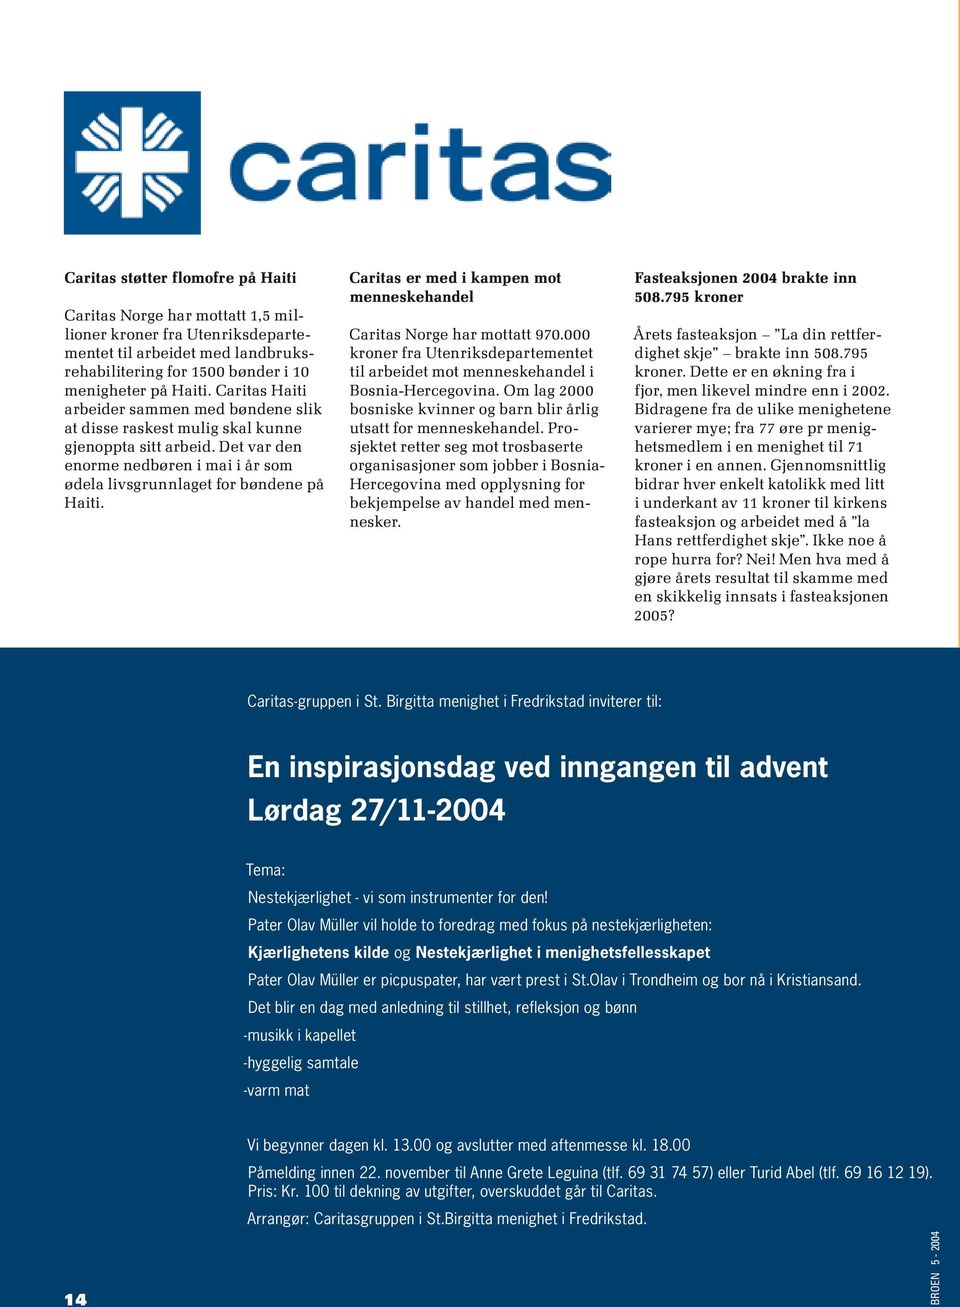 Caritas er med i kampen mot menneskehandel Caritas Norge har mottatt 970.000 kroner fra Utenriksdepartementet til arbeidet mot menneskehandel i Bosnia-Hercegovina.